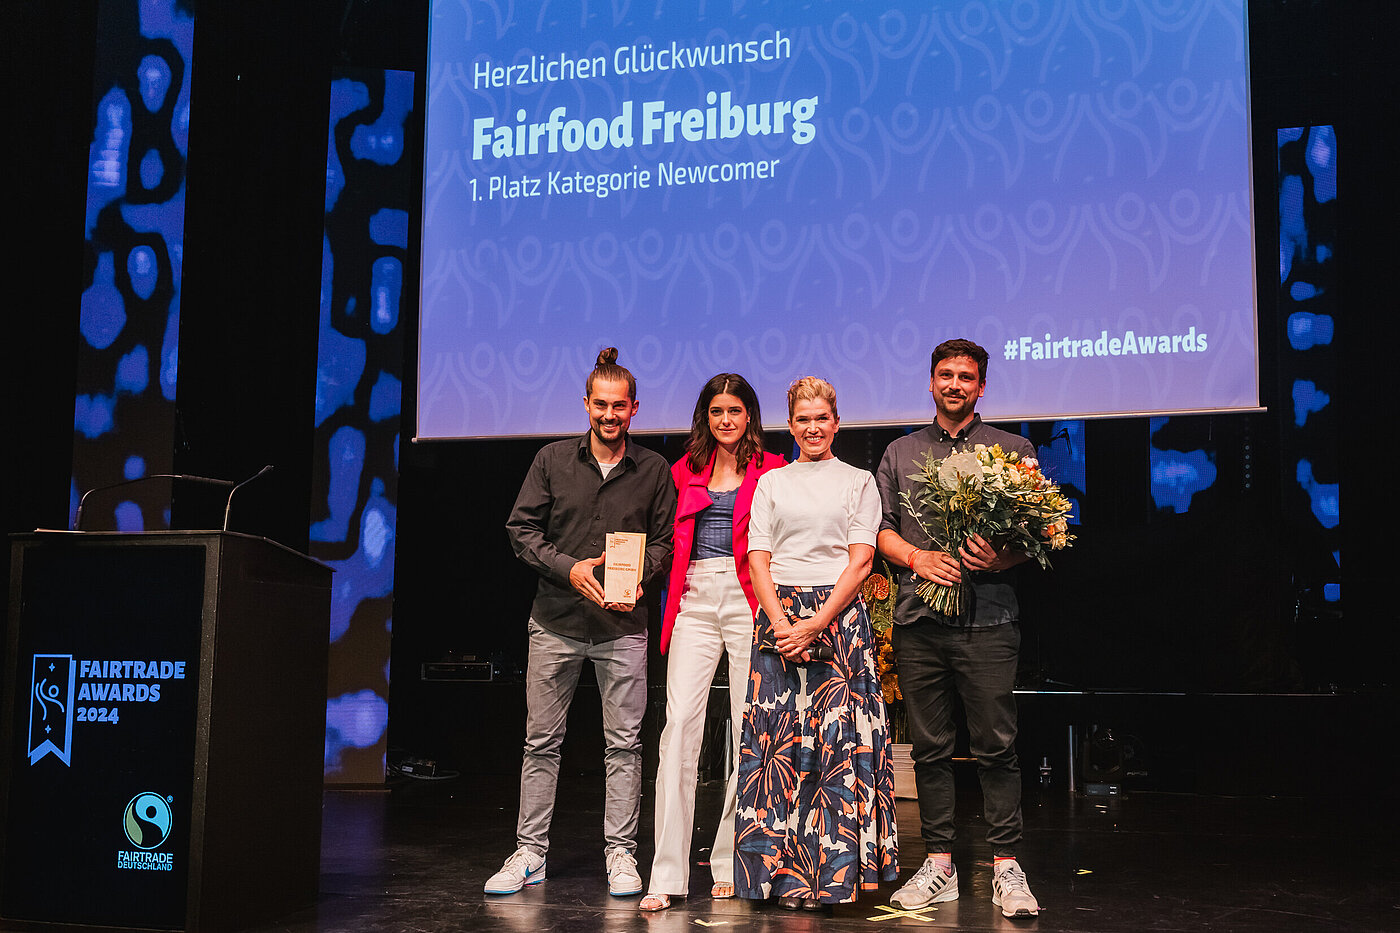 Auf der Bühne mit Anke Engelke und Laudatorin Marie Nasemann bei den Fairtrade Awards 2024: Gewinner des Fairtrade Awards in der Kategorie Newcomer ist fairfood Freiburg